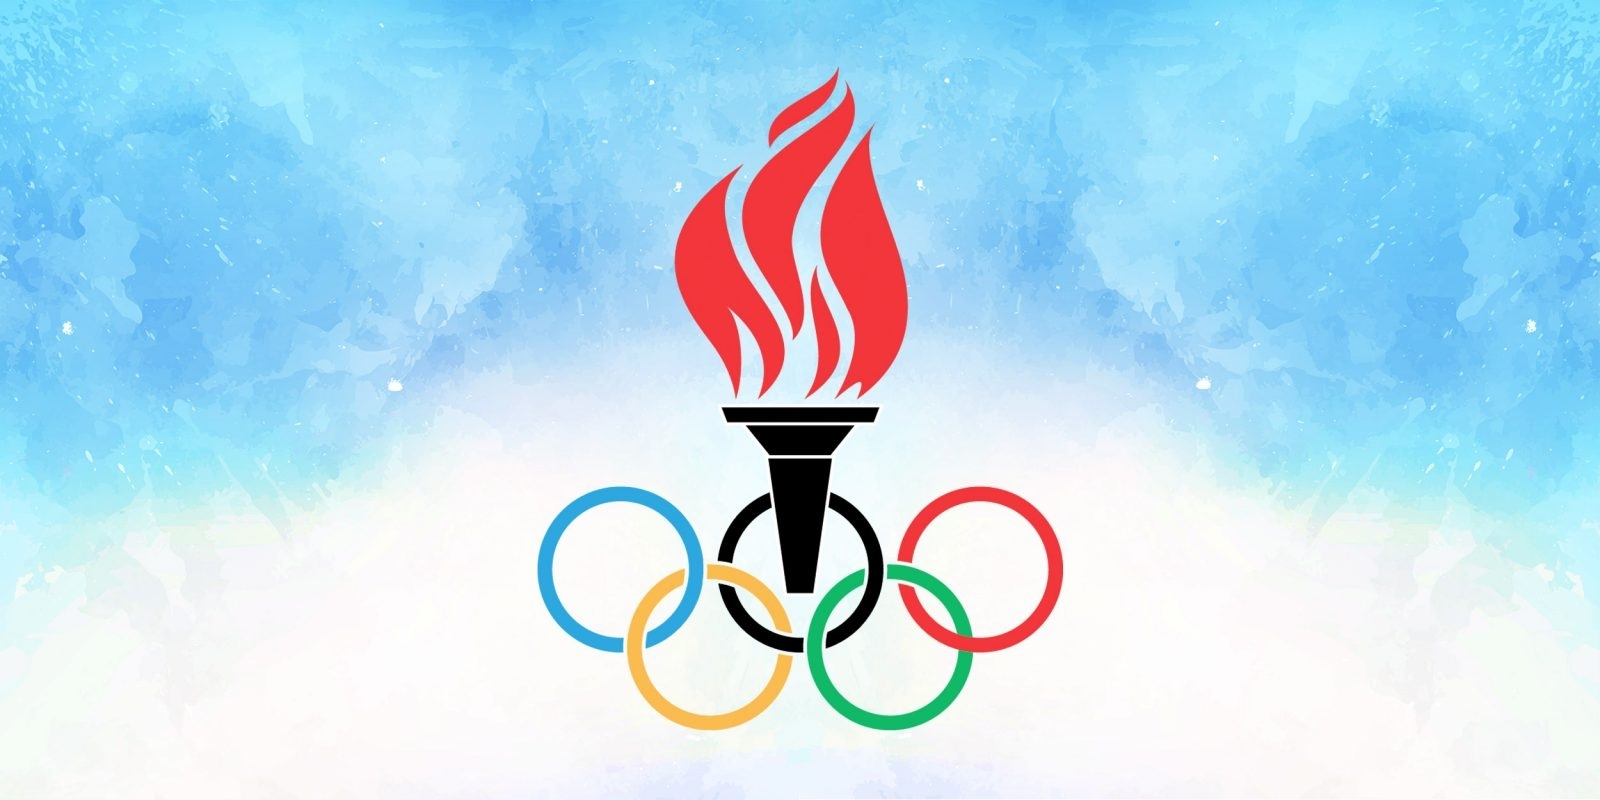 Олимпийские кольца и факел